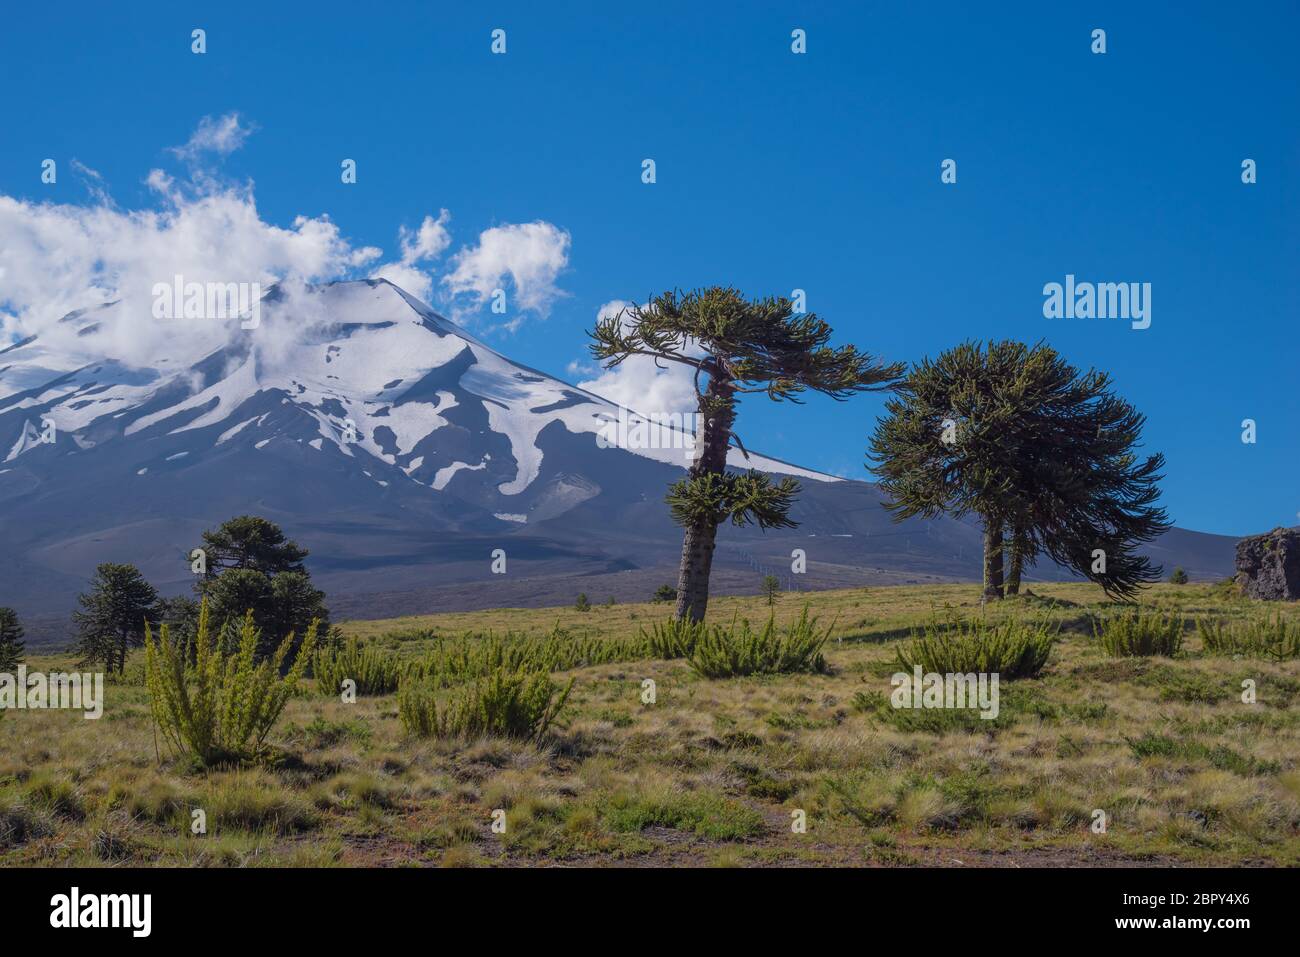 Der aktive Vulkan Lonquimay in Cgile mit den berühmtesten und ältesten Bäumen Chiles, den Araukarien. Die Aufnahme entstand im Februar 2019 Stockfoto